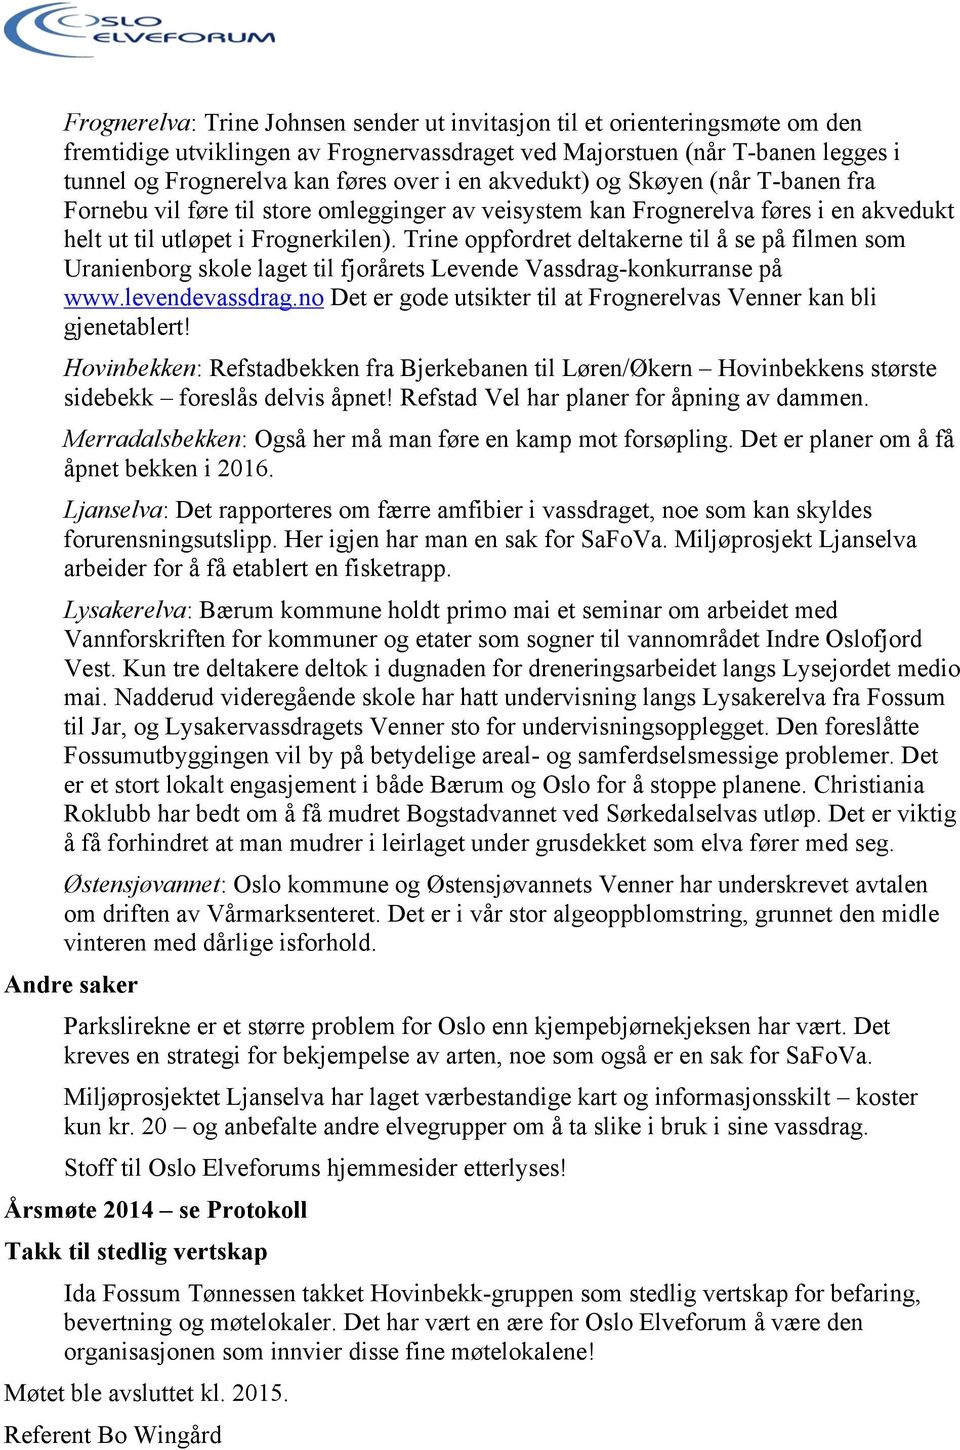 Trine oppfordret deltakerne til å se på filmen som Uranienborg skole laget til fjorårets Levende Vassdrag-konkurranse på www.levendevassdrag.